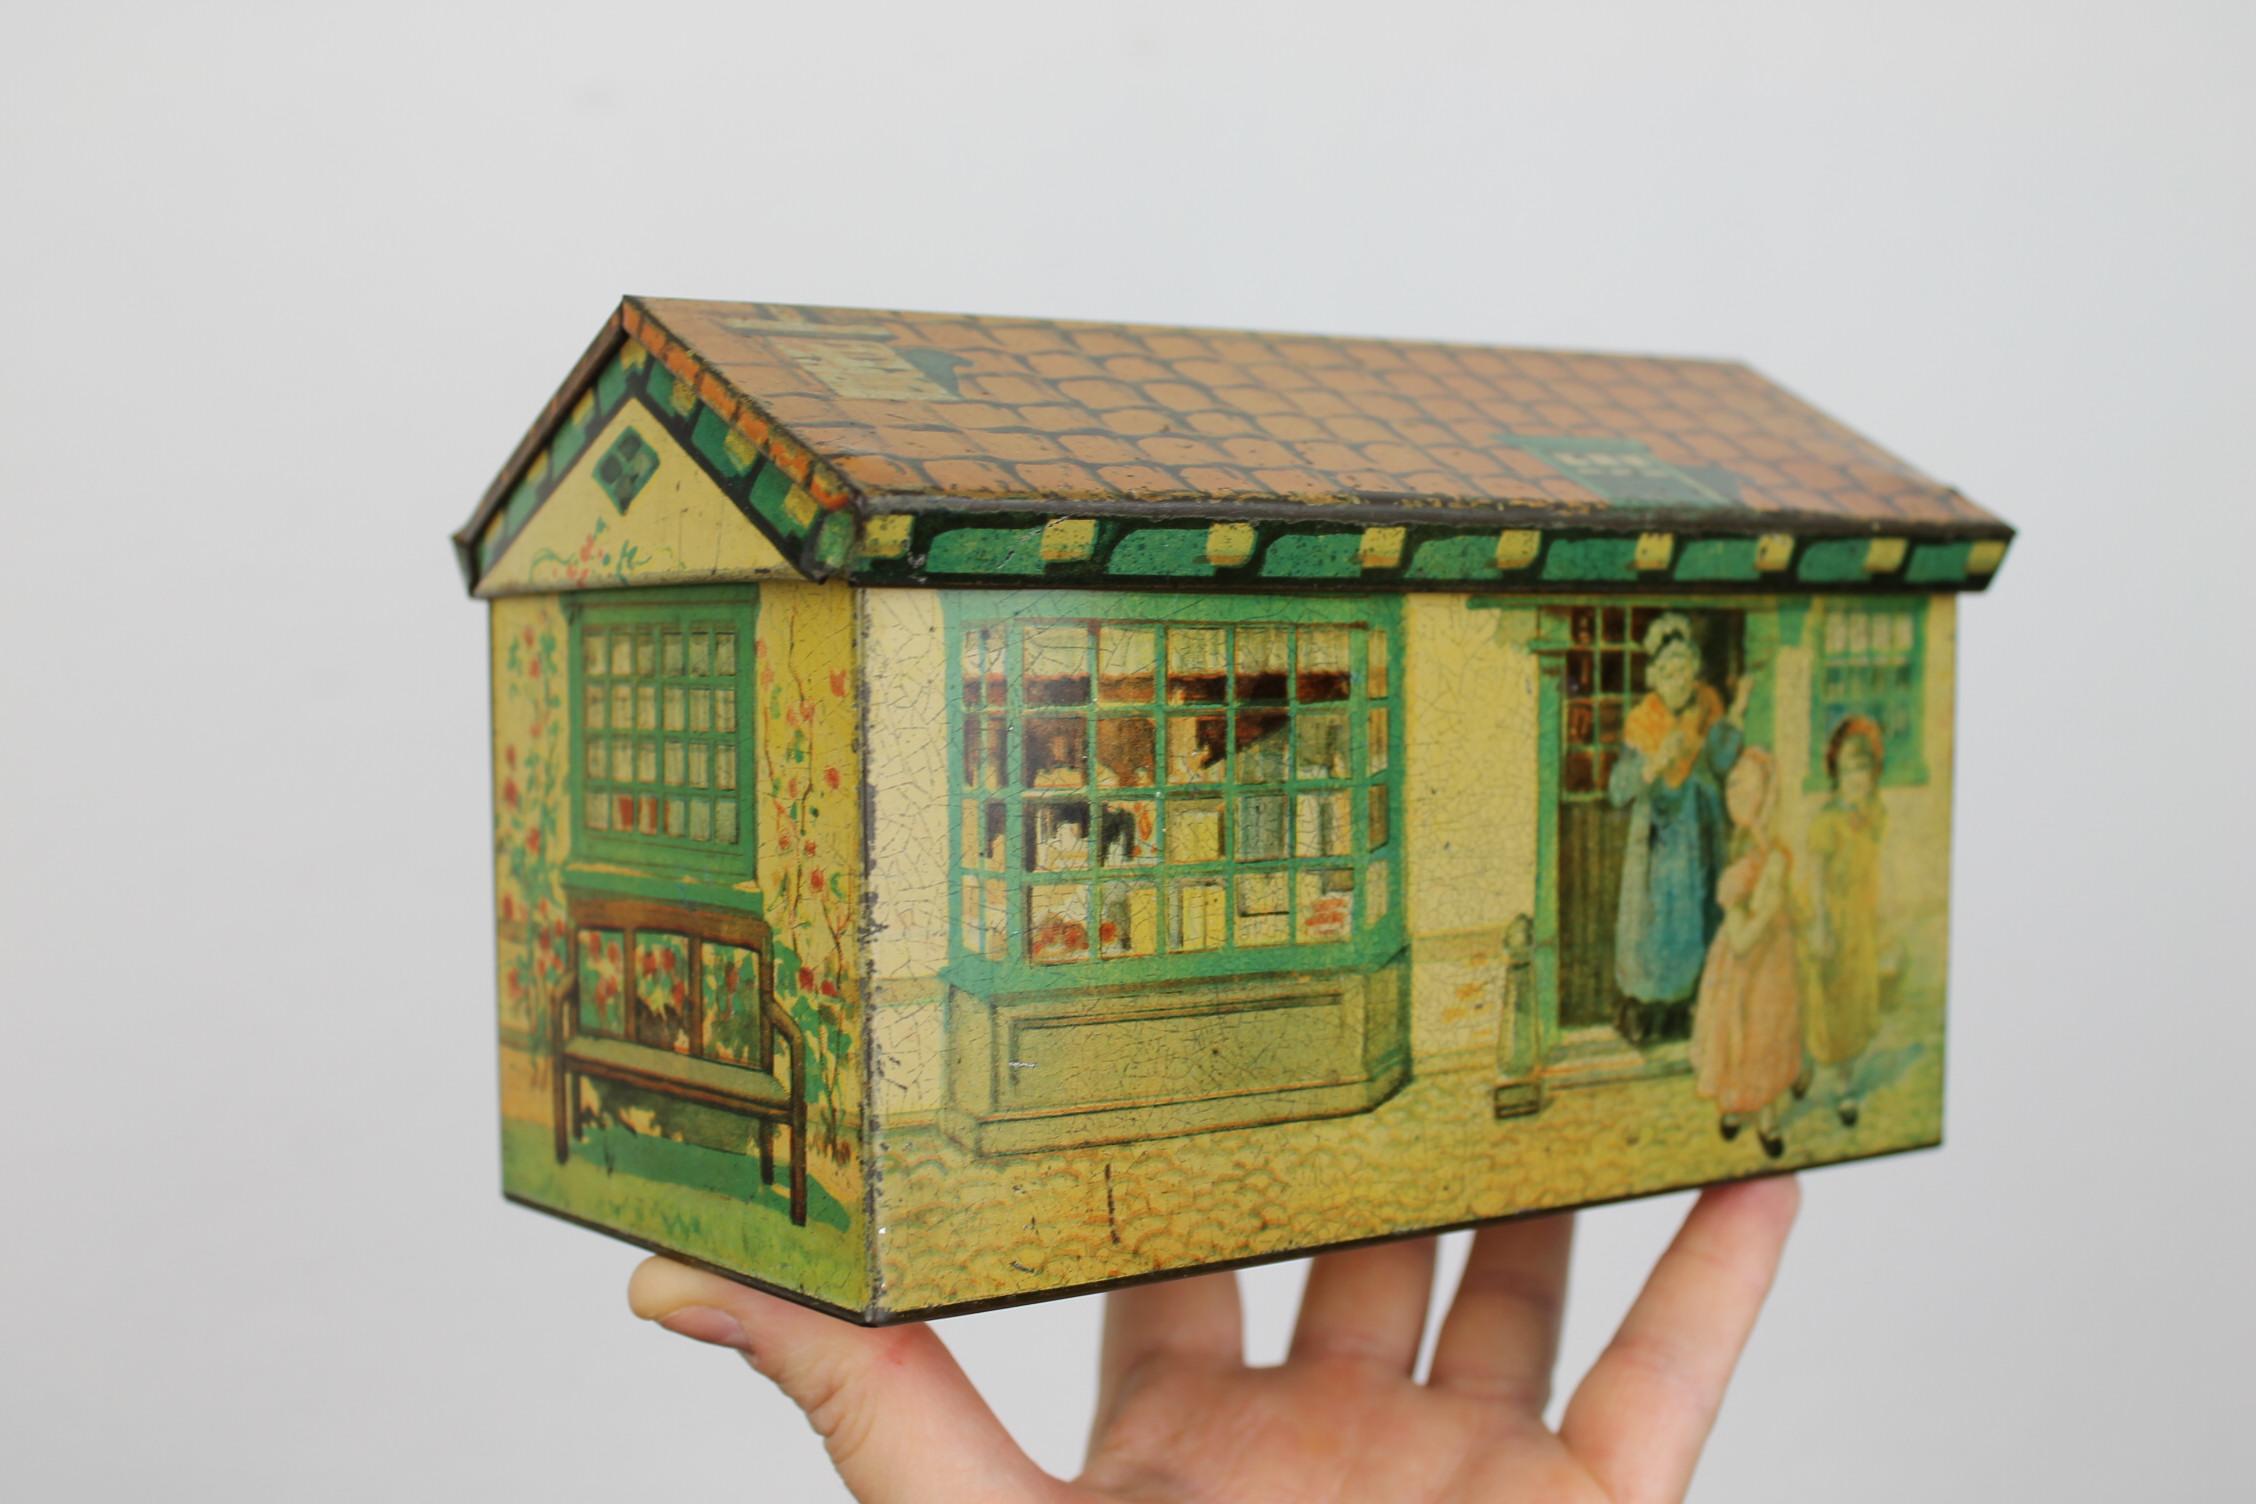 Keksdosenhaus. 
Eine alte Keksdose - Keksdose in Form eines Hauses. 
Das Ziegeldach dieser Blechdose kann geöffnet werden. 
Um Sie herum gibt es verschiedene Szenen: 
Ein kleiner Lebensmittelladen, eine Mutter, die ihre Kinder hinauswinkt, damit sie